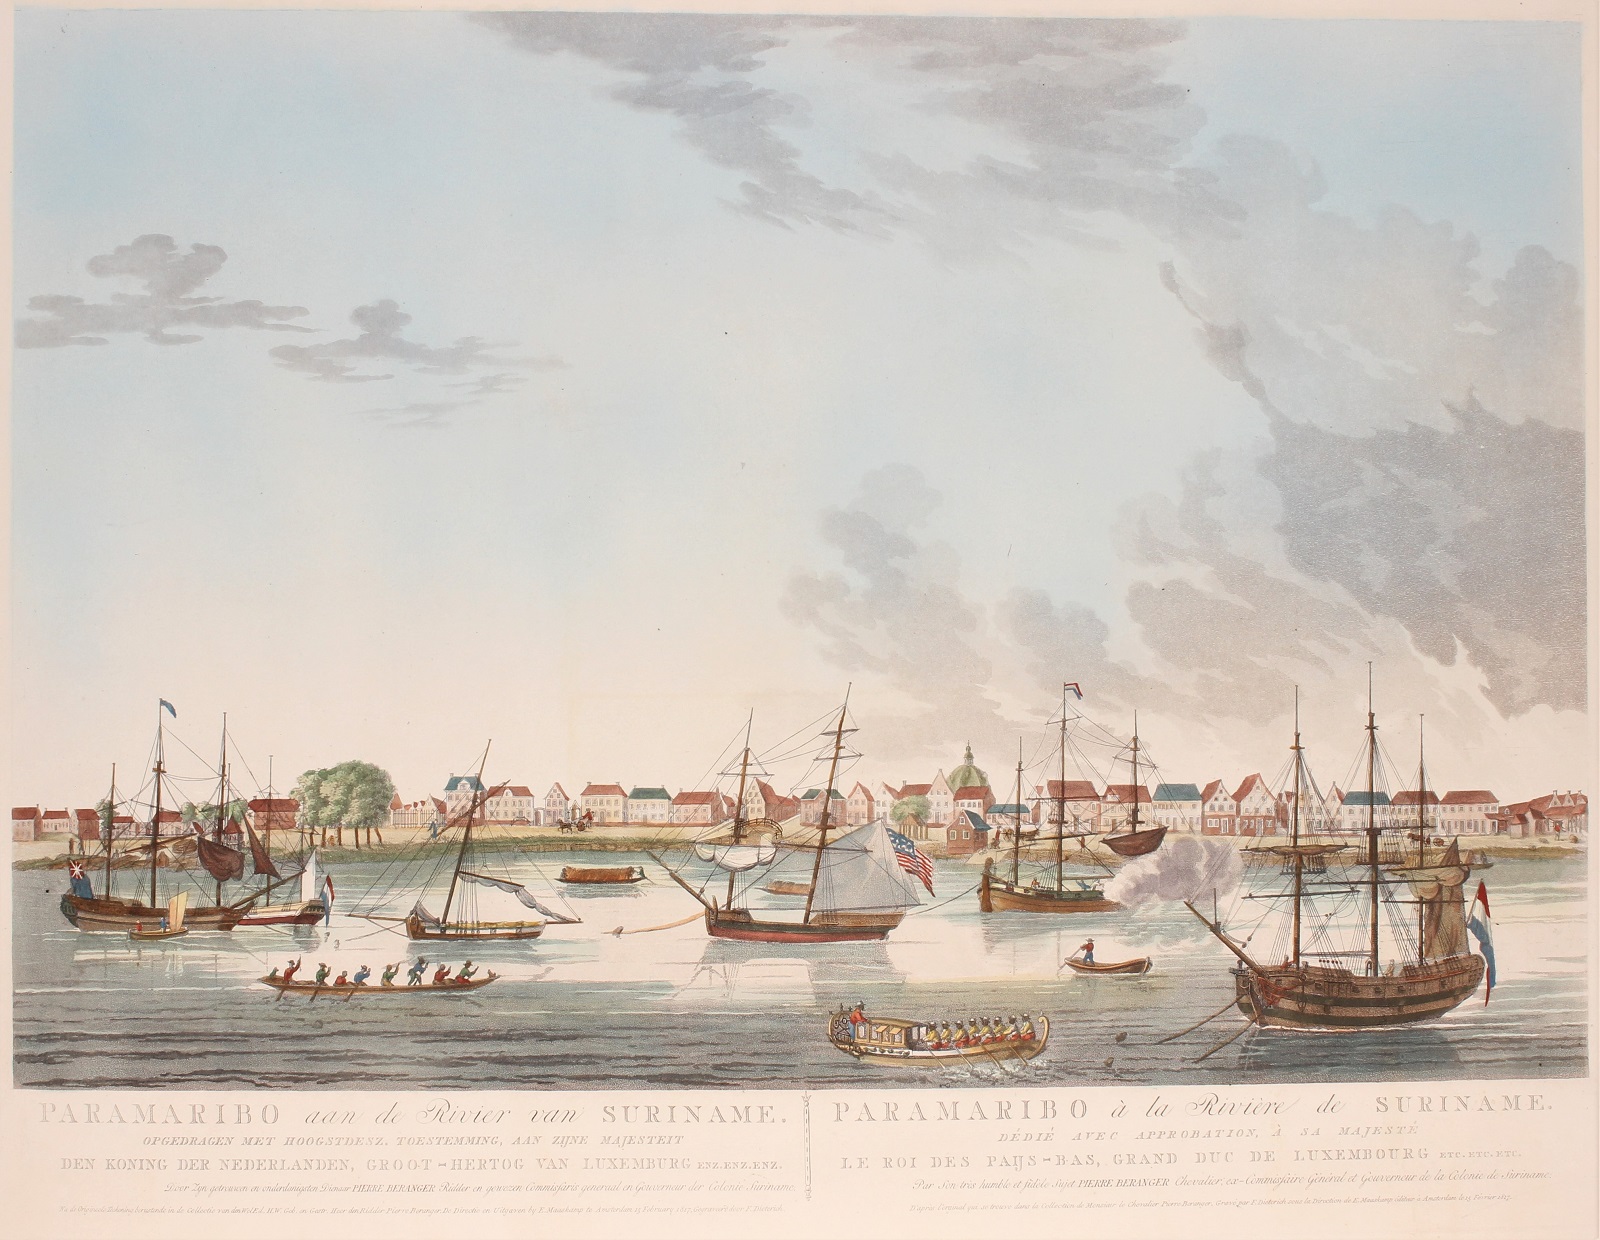 Beranger-- Pierre - Paramaribo, Suriname - Pierre Beranger, 1817